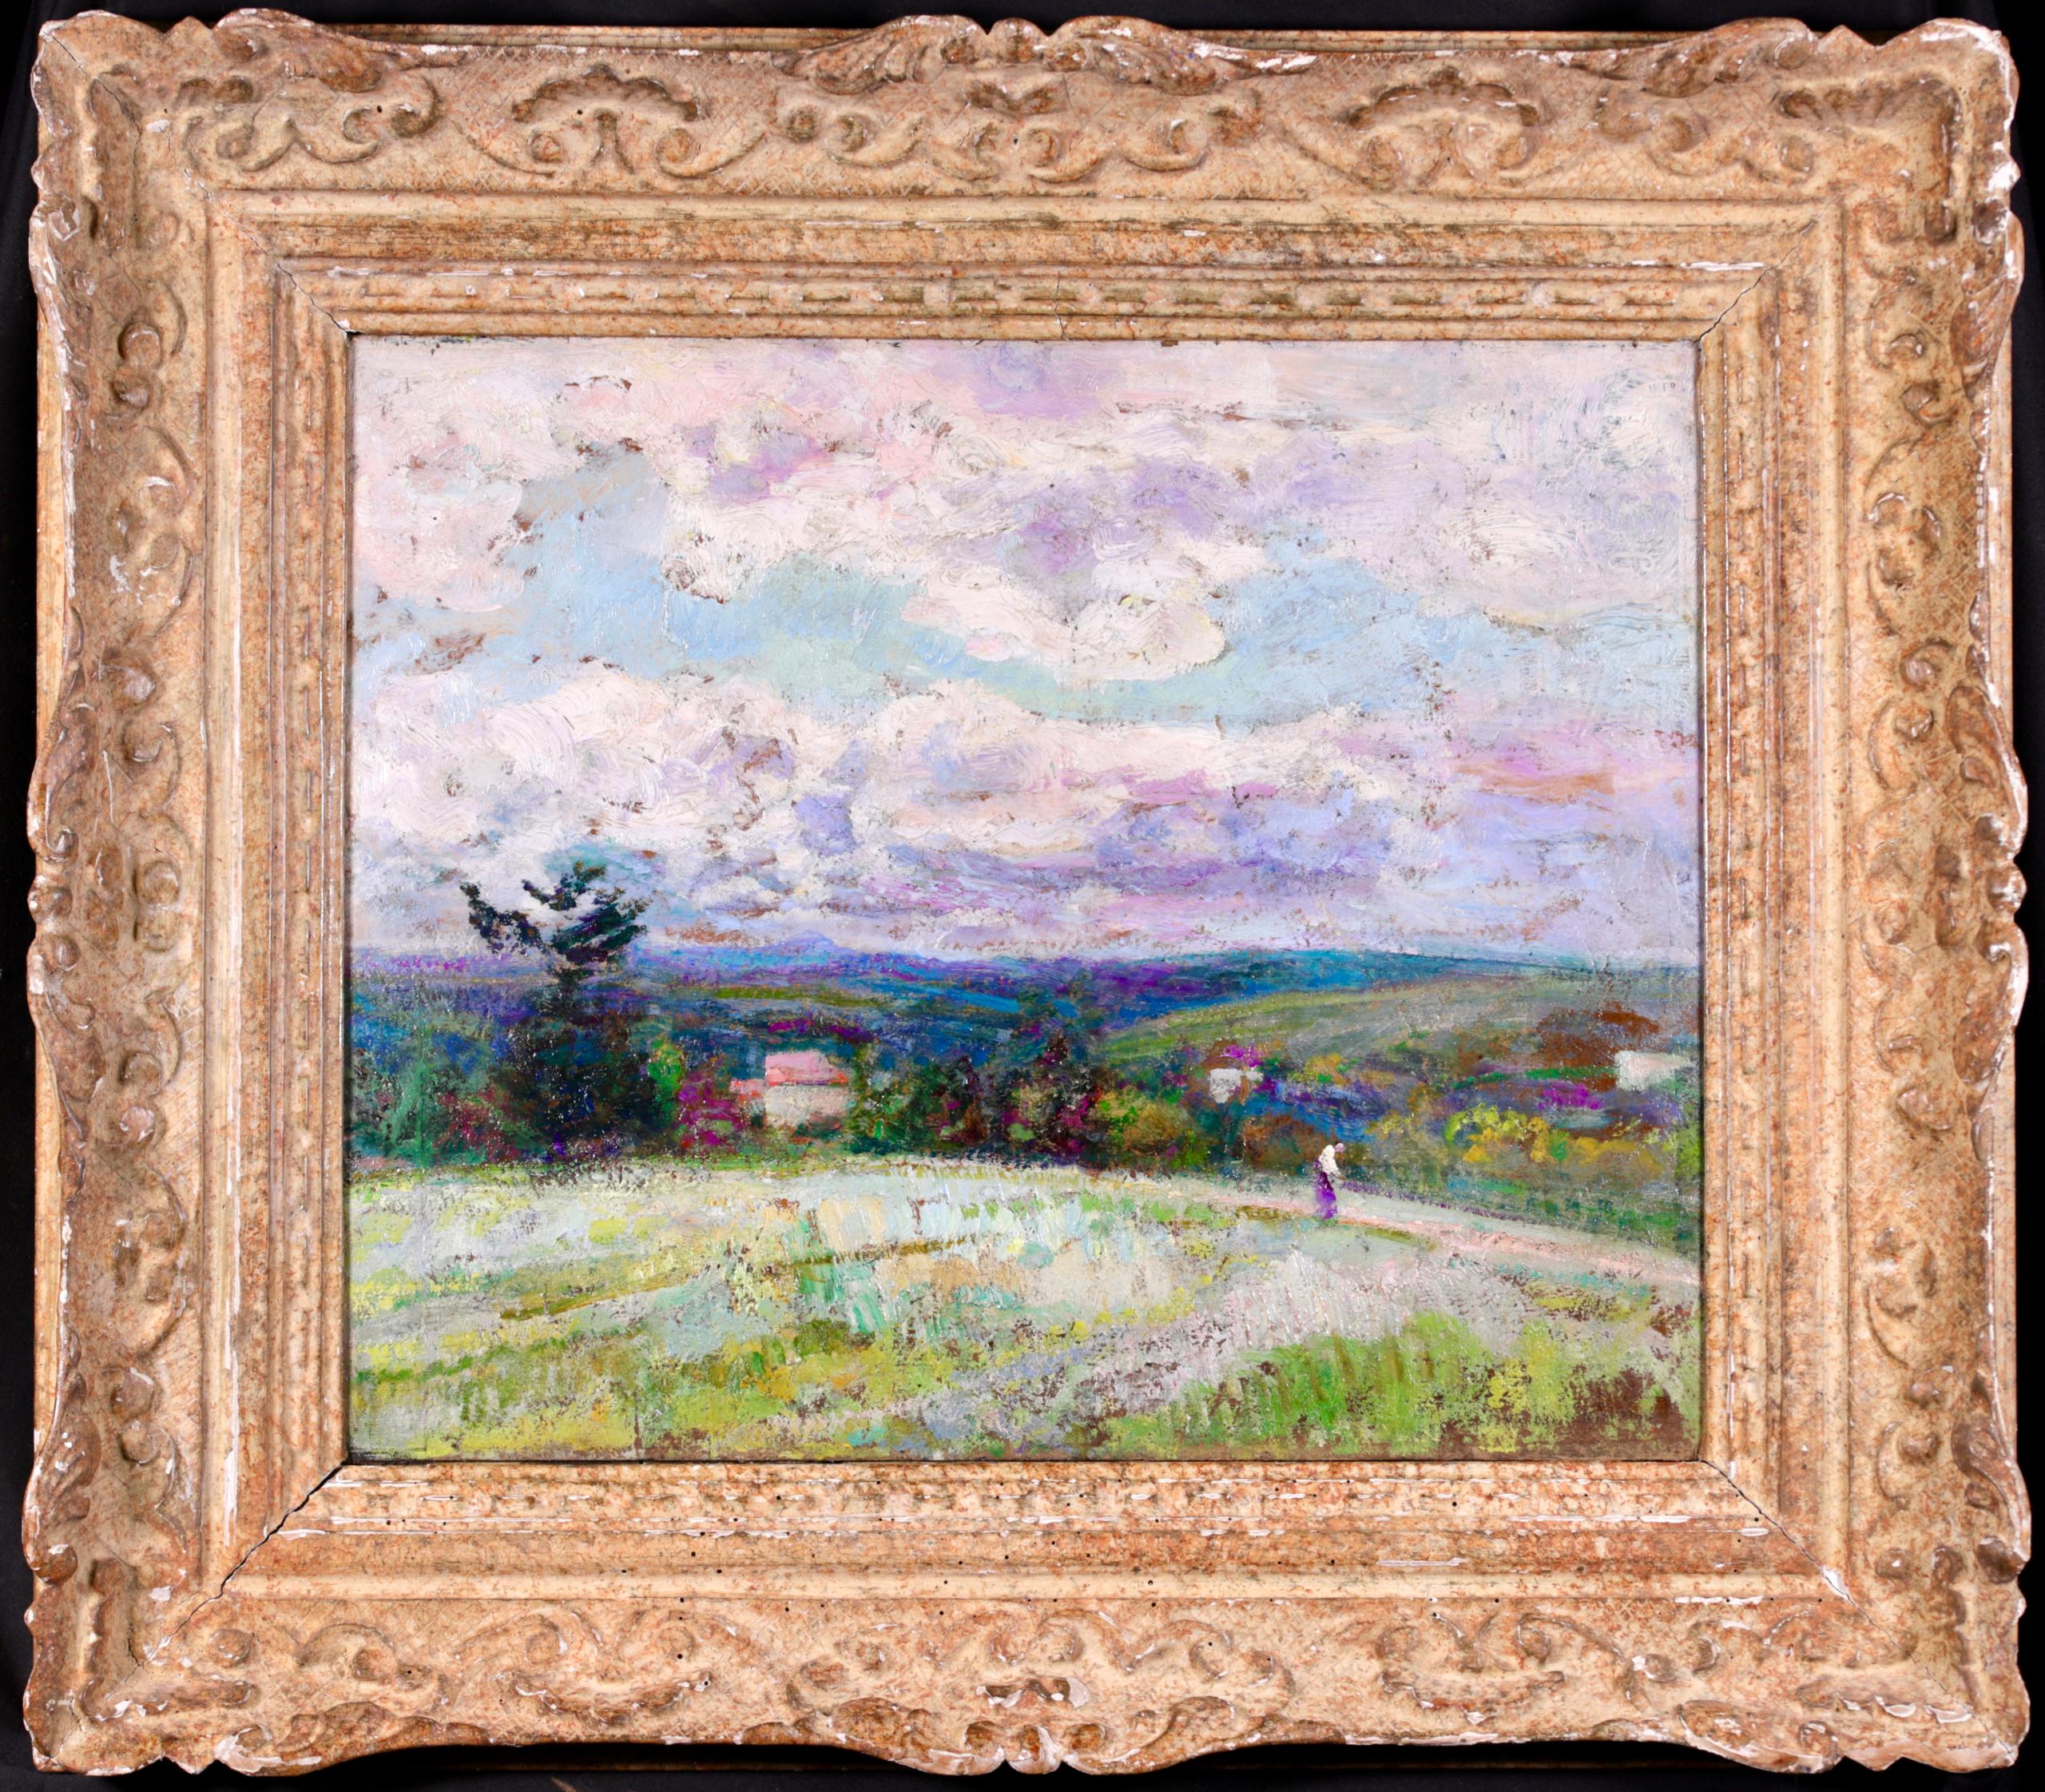 Magnifique paysage à l'huile sur panneau signé vers 1920 par le célèbre peintre post-impressionniste Victor Charreton. L'œuvre représente un personnage marchant dans des champs verdoyants et vallonnés, avec des maisons parsemées au loin, tandis que